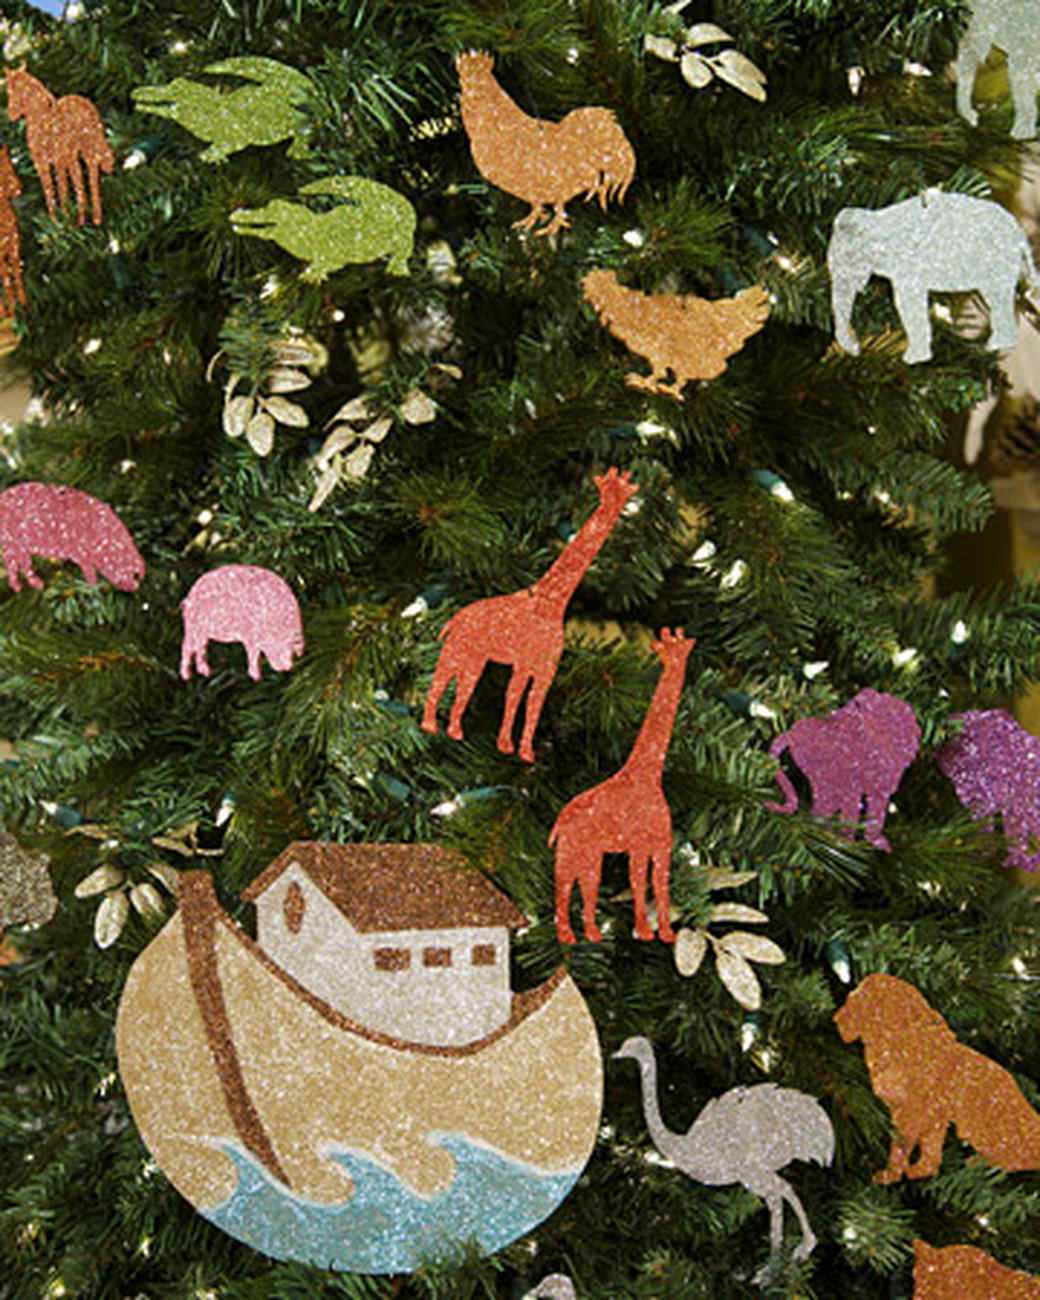 Noah's Ark Ornaments